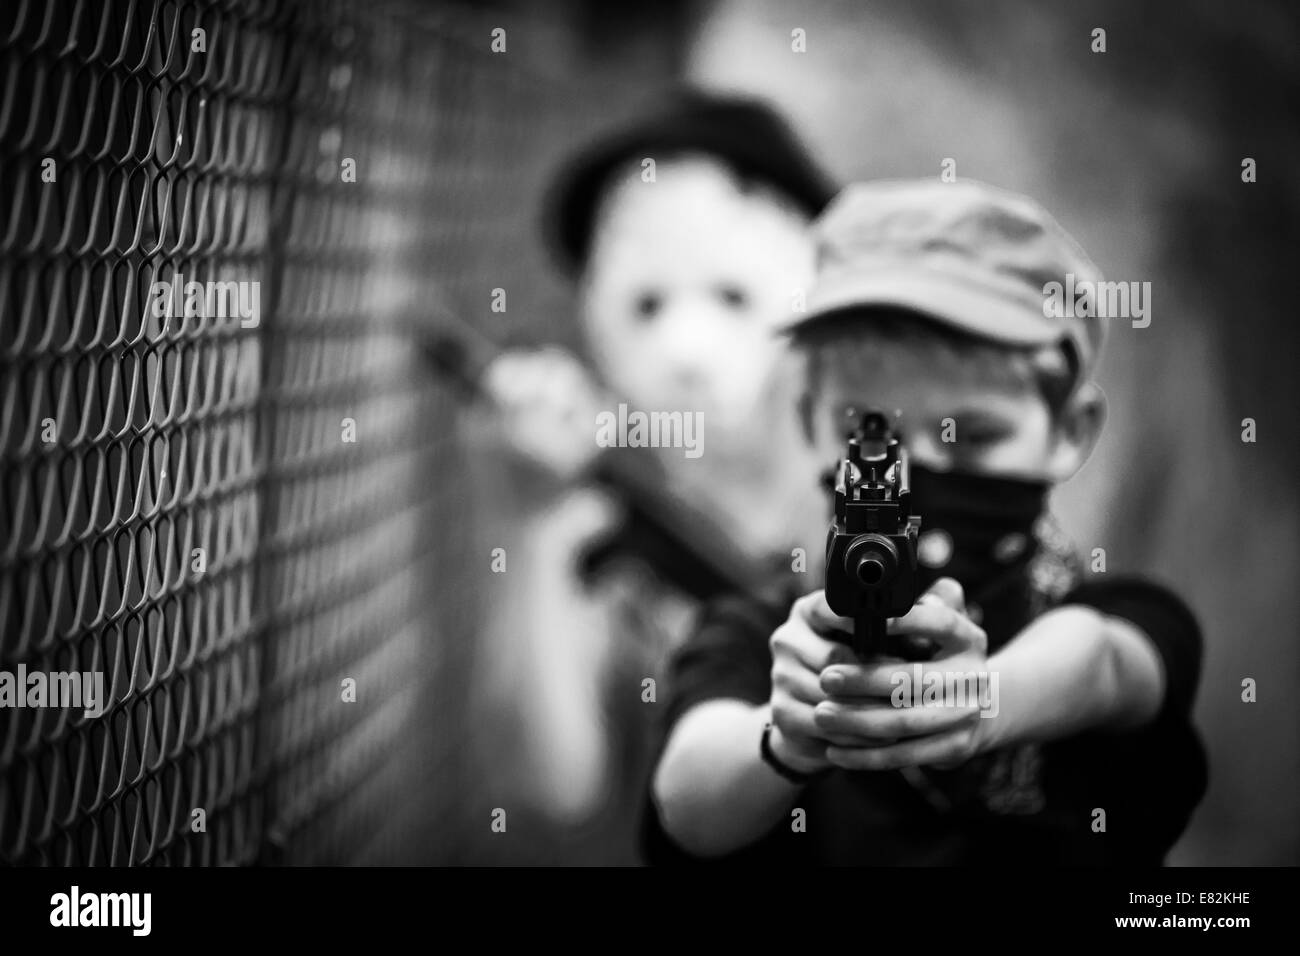 Ragazzo mascherato mirando con pistola giocattolo Foto Stock